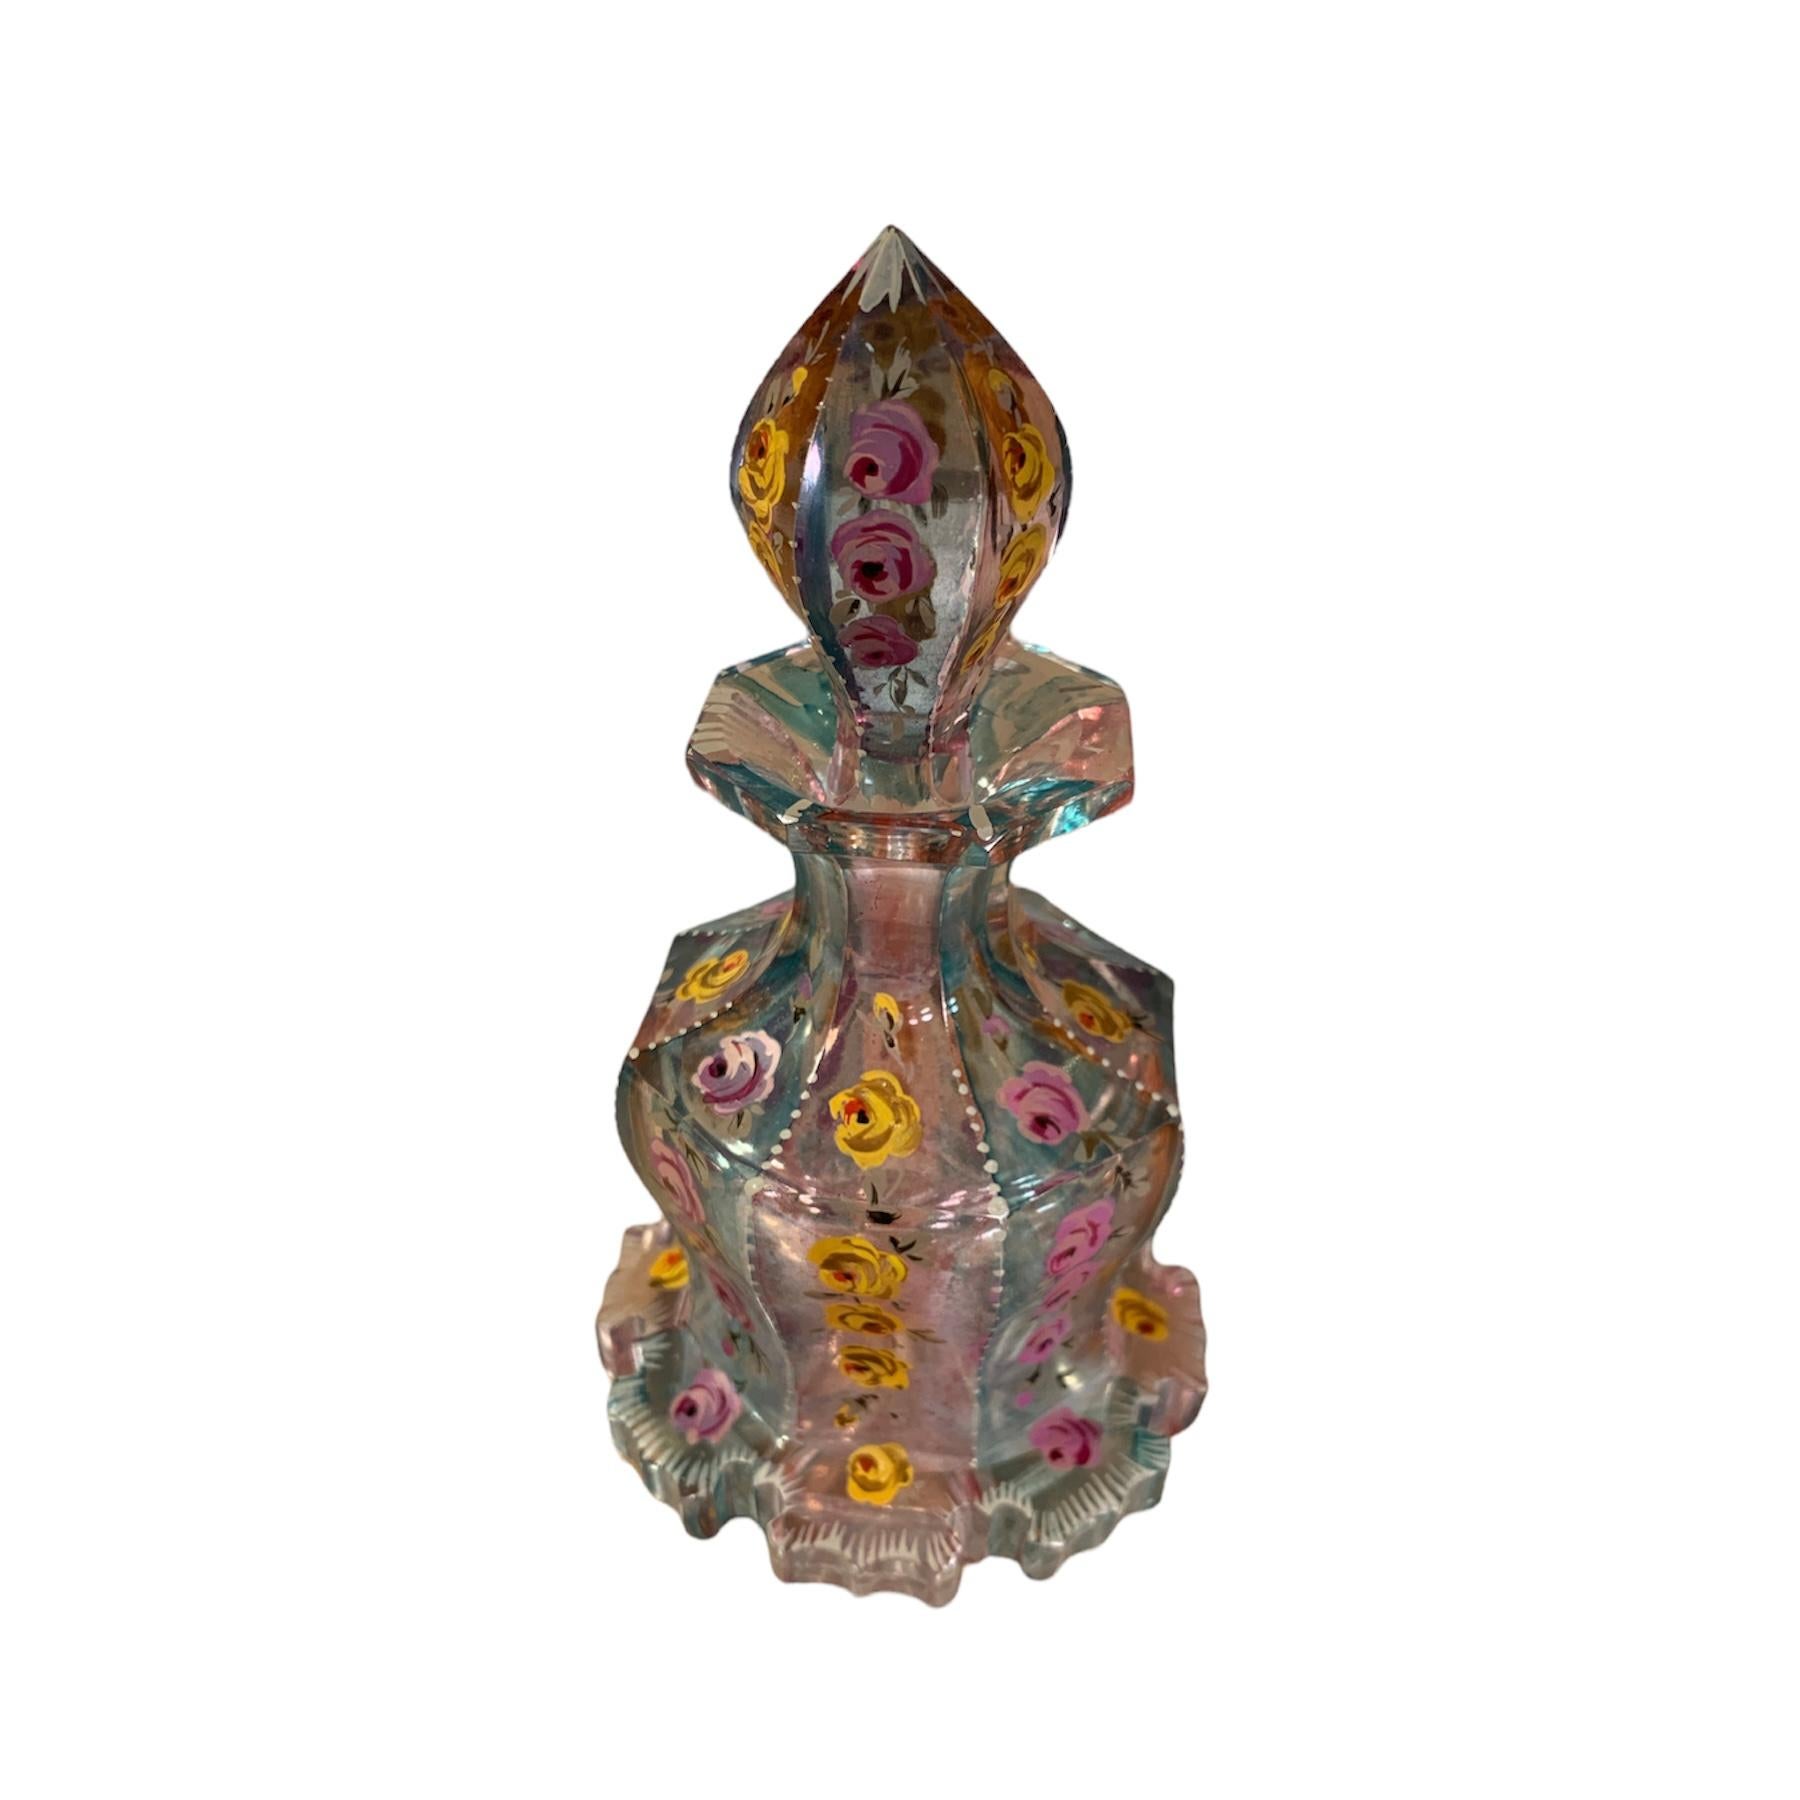 Böhmisches Glas, sehr ungewöhnliche Farben, rundum handbemalt und in eindrucksvoller Form handgeschliffen, 2-farbiges Kristall, das Bidy ist in 8 Seitenteilen geformt, die jeweils reich mit bunten Blüten und Blättern emailliert sind, weitere